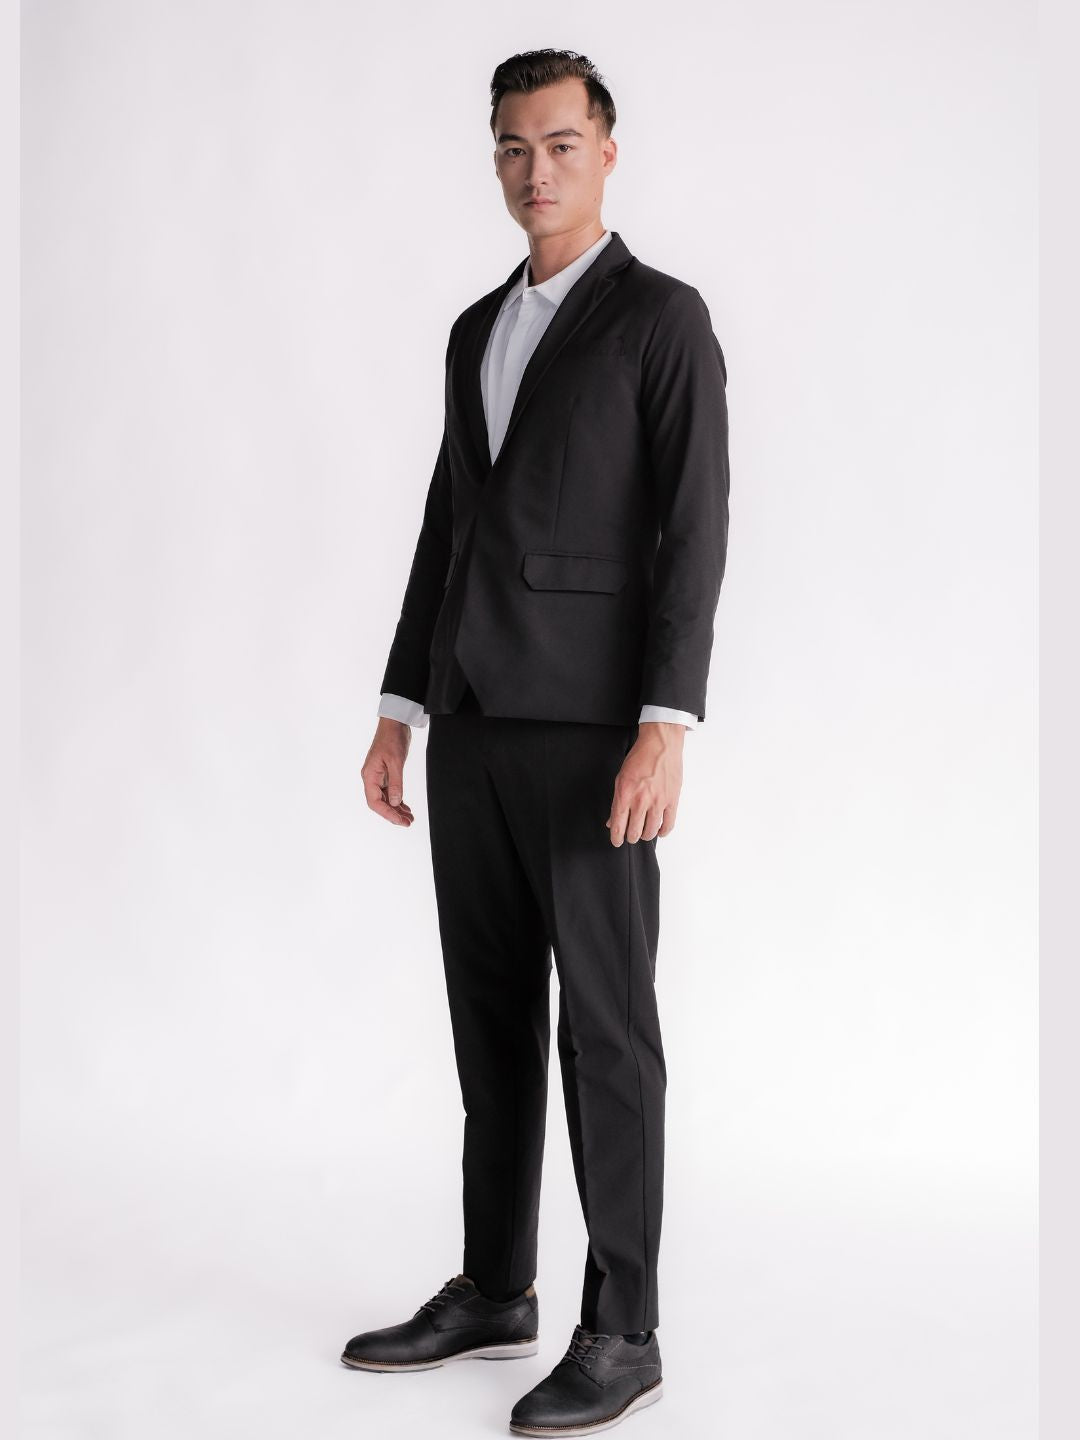 Ultra Suit 3.0 單排扣套裝組合 經典黑 + M-system - TRANZEND